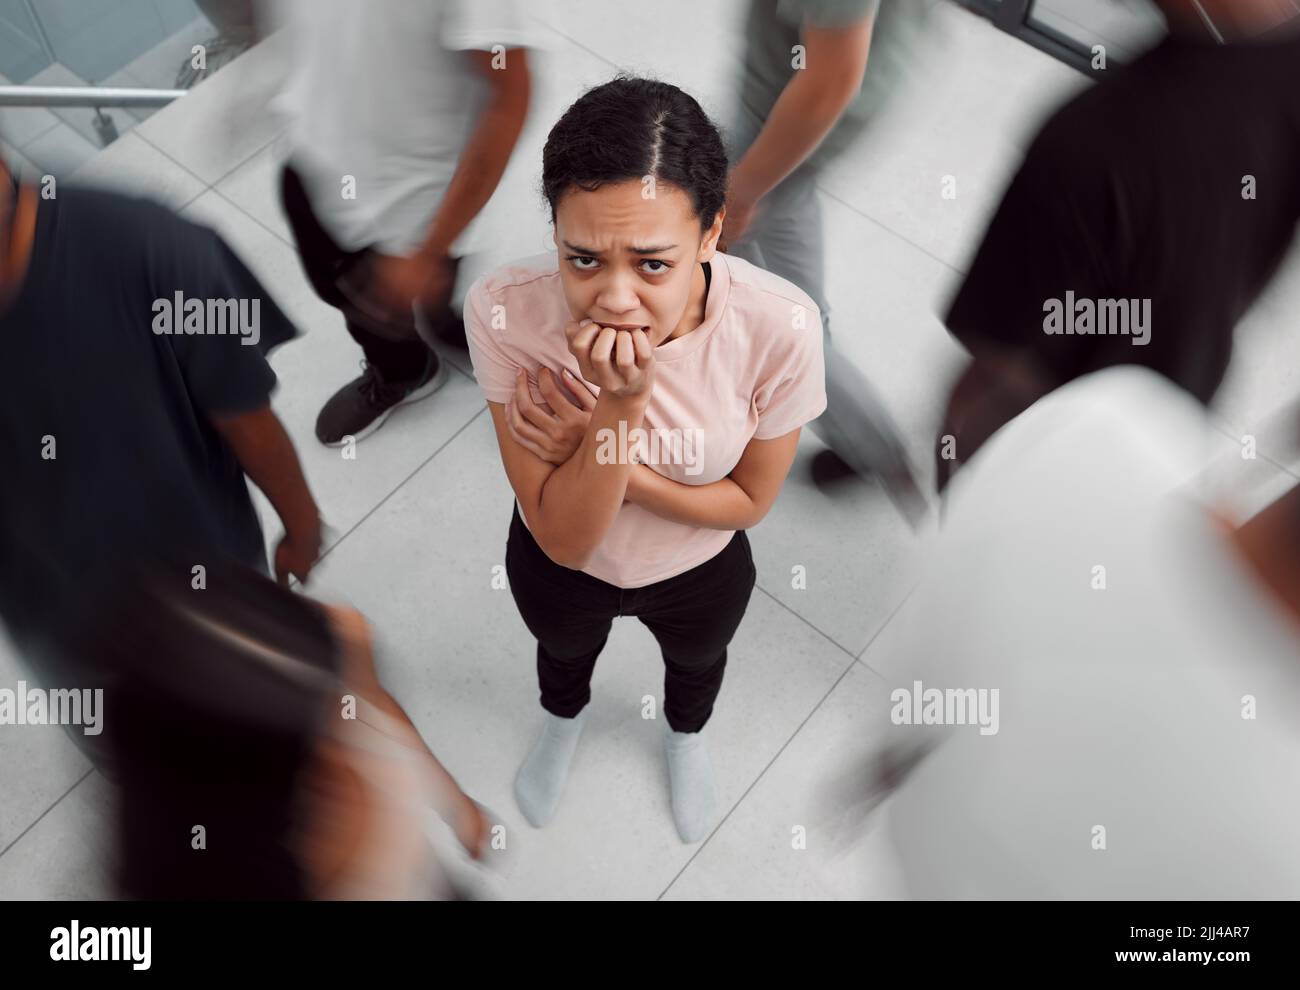 Im Namen der Verzweiflung. Eine junge Frau, die eine psychische Erkrankung erlebt, während sie von Menschen umgeben ist. Stockfoto